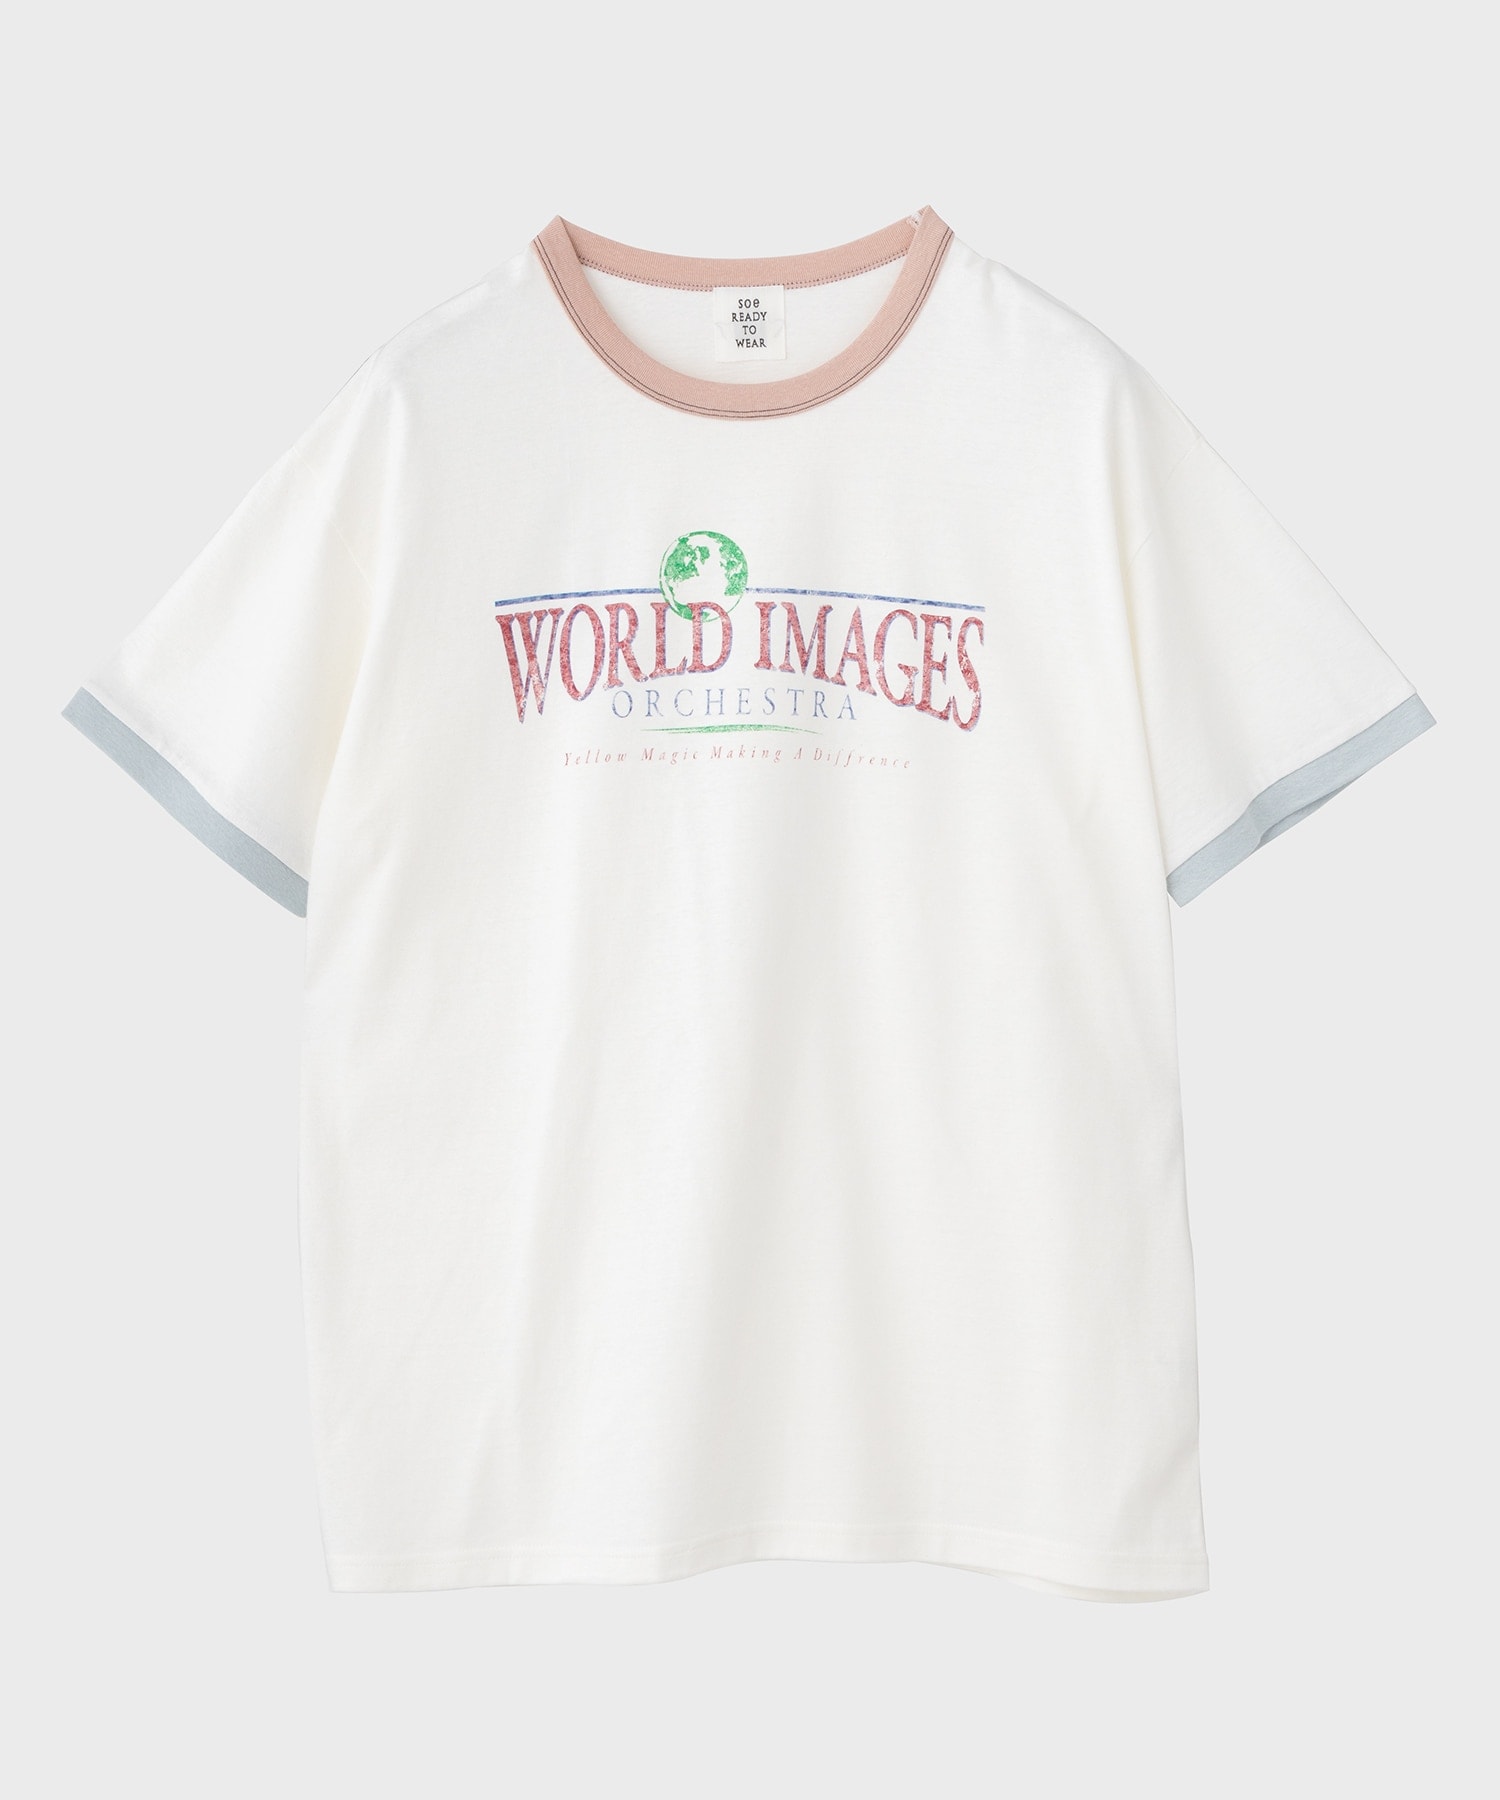 Ringer T Shirts WORLD IMAGE